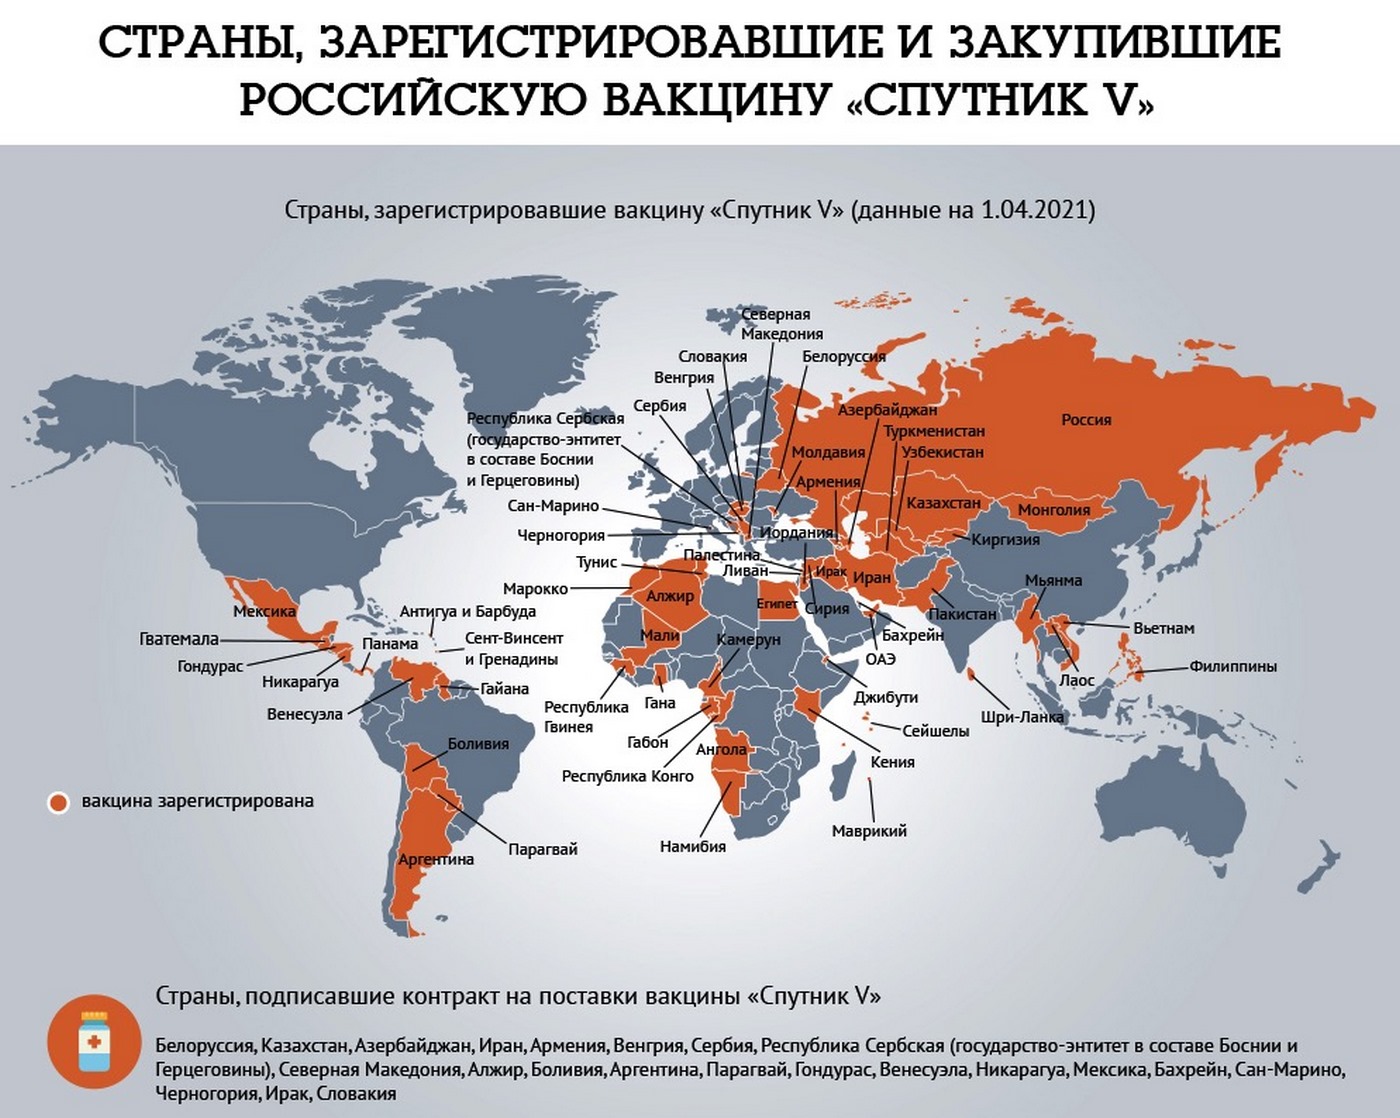 Какие страны запретили z. Спутник вакцина страны. Страны вакцинированные спутником. Страны одобрившие Спутник v список. Какие страны признали Спутник v.